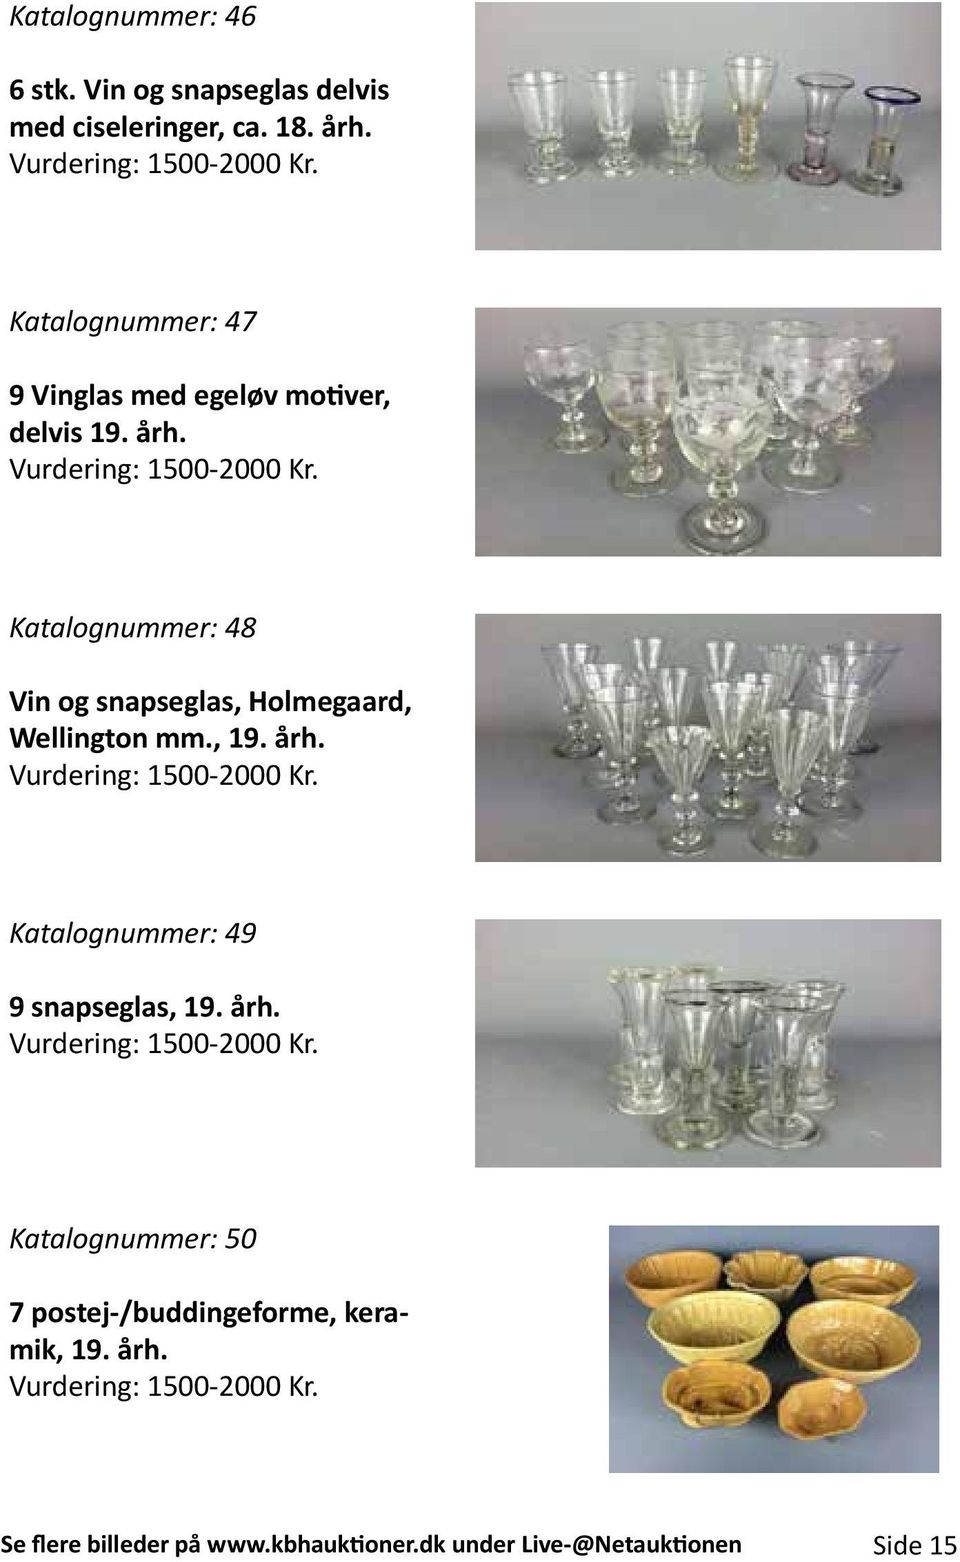 Katalognummer: 48 Vin og snapseglas, Holmegaard, Wellington mm., 19. årh. Vurdering: 1500-2000 Kr.